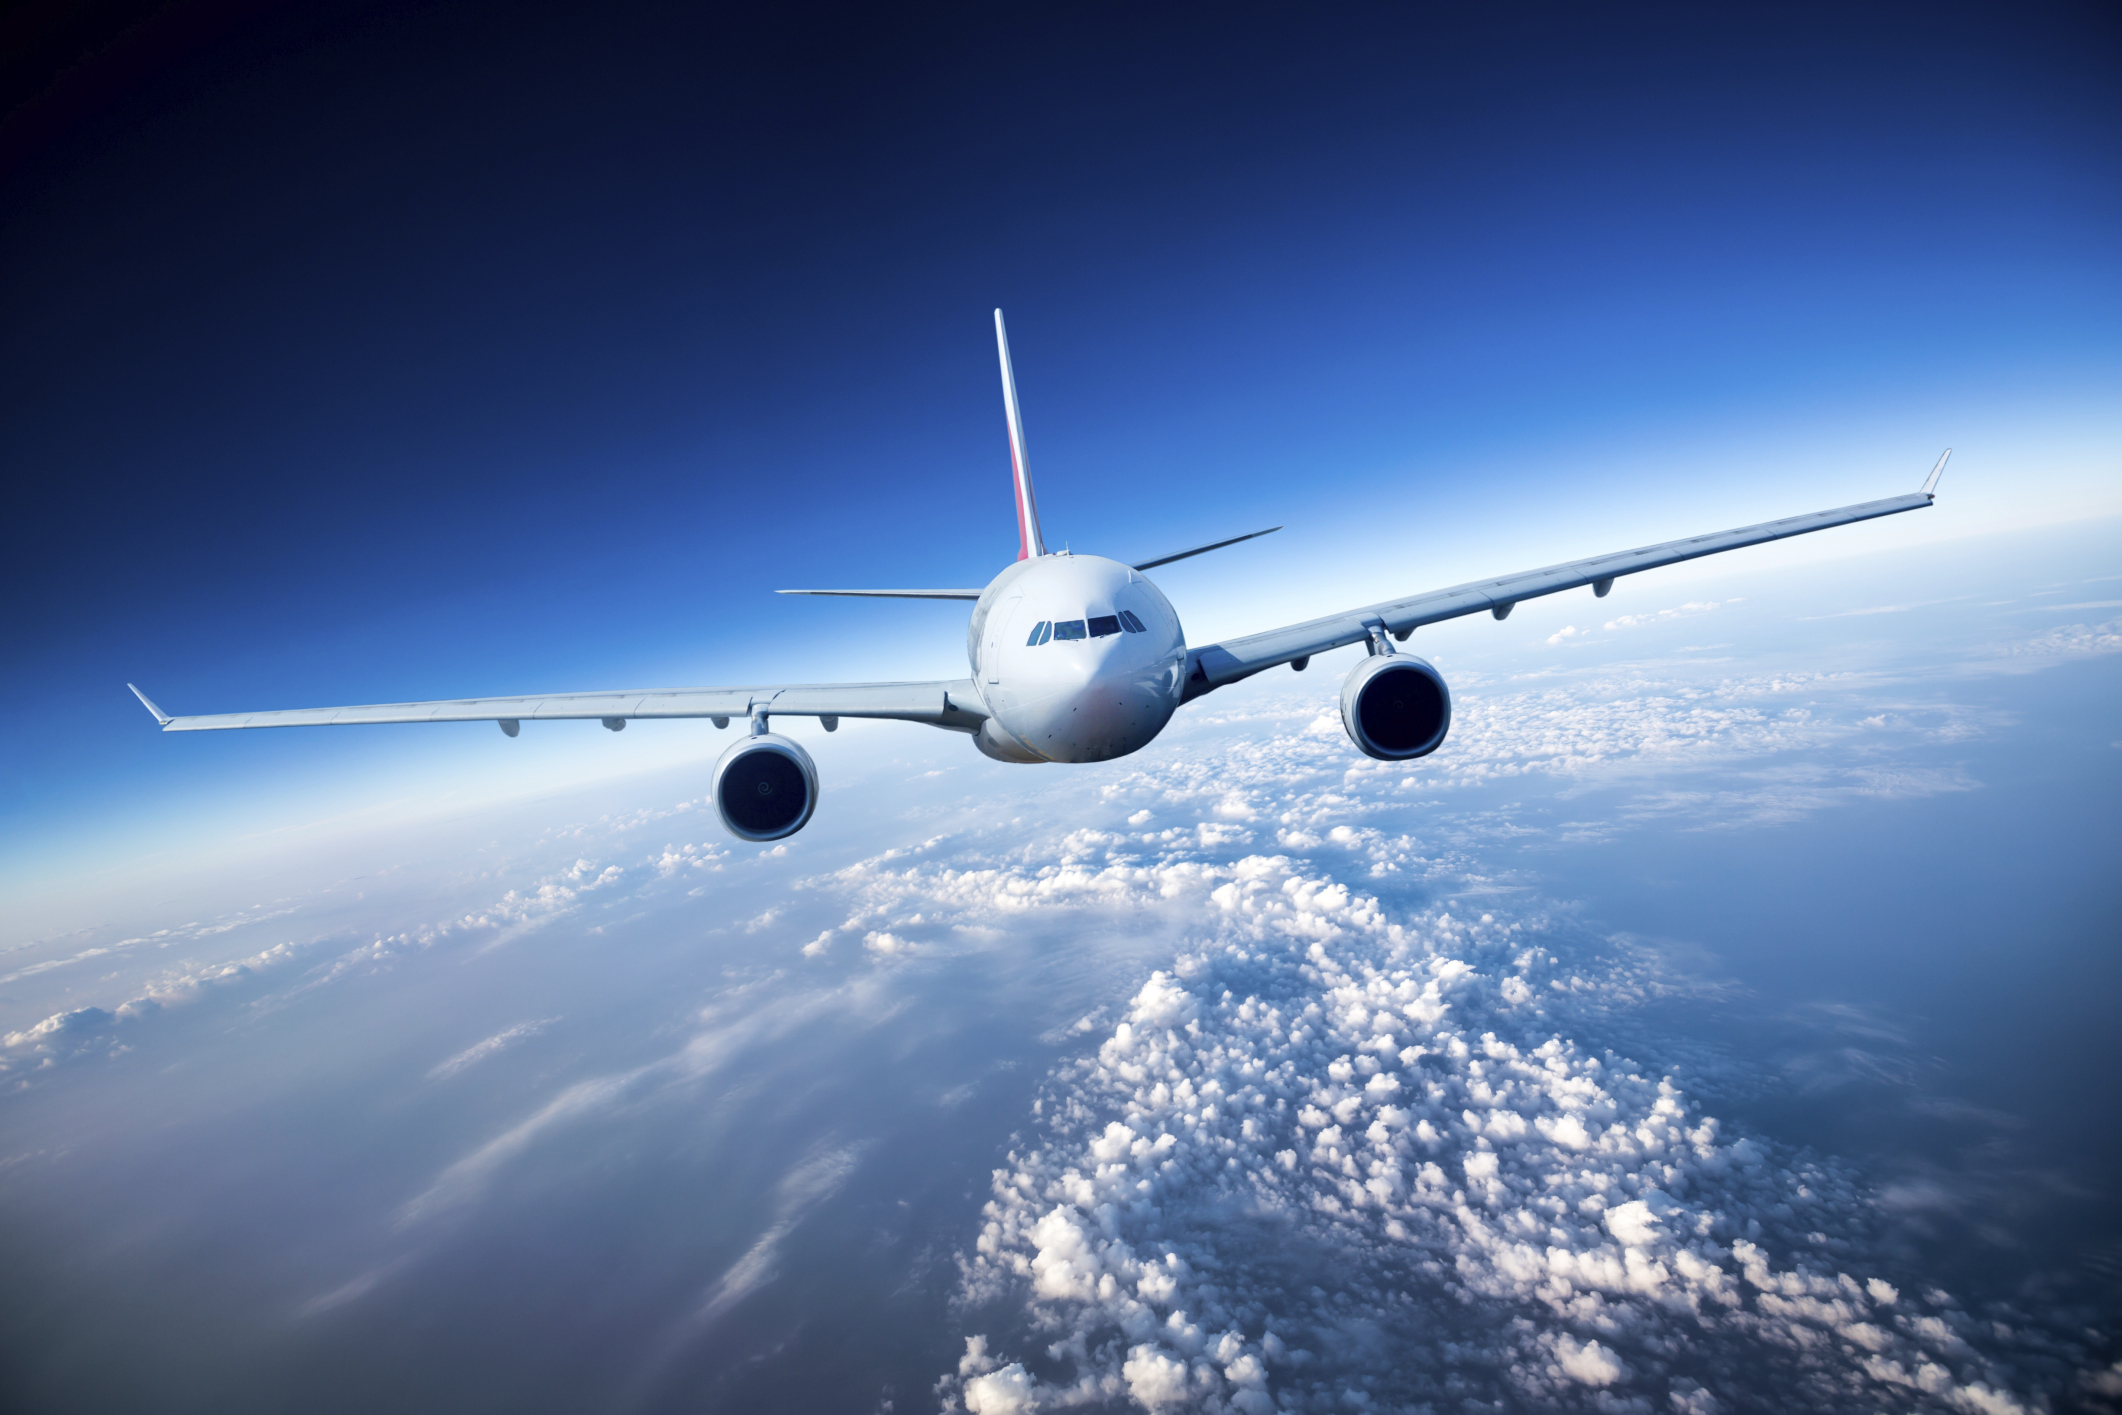 Πρόεδρος FISO της ΥΠΑ: «Το επιβατικό κοινό αντιμετωπίζει σοβαρότατους κινδύνους και στις πτήσεις»